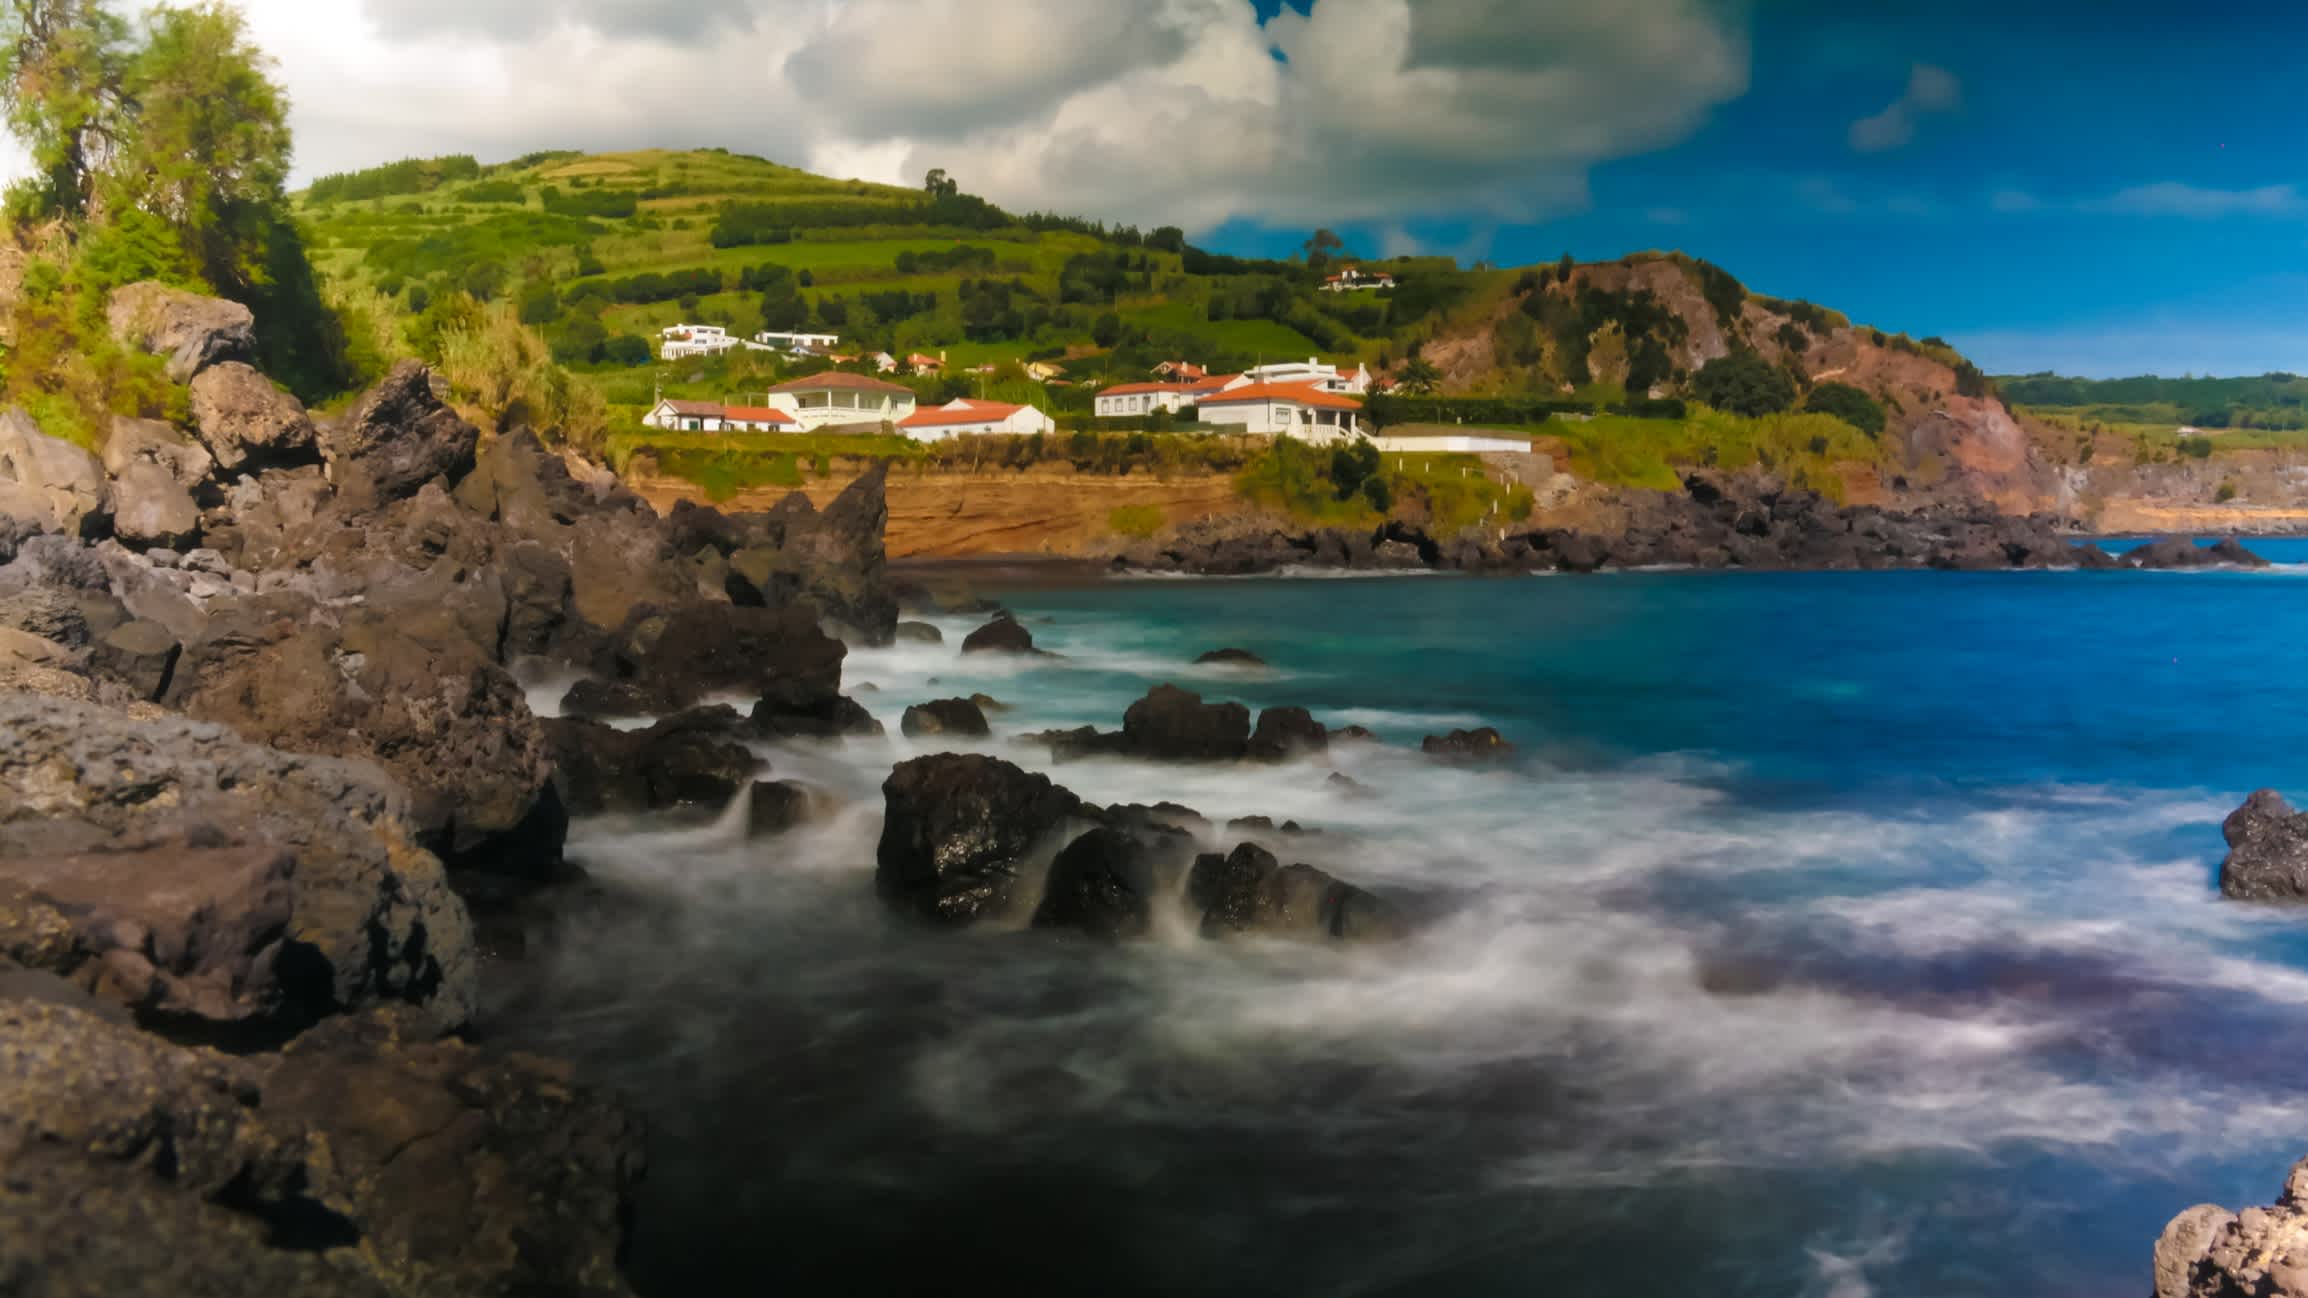 Vagues sur les rochers verdoyants de Praia Almoxarife, île de Faial, aux Açores, au Portugal.